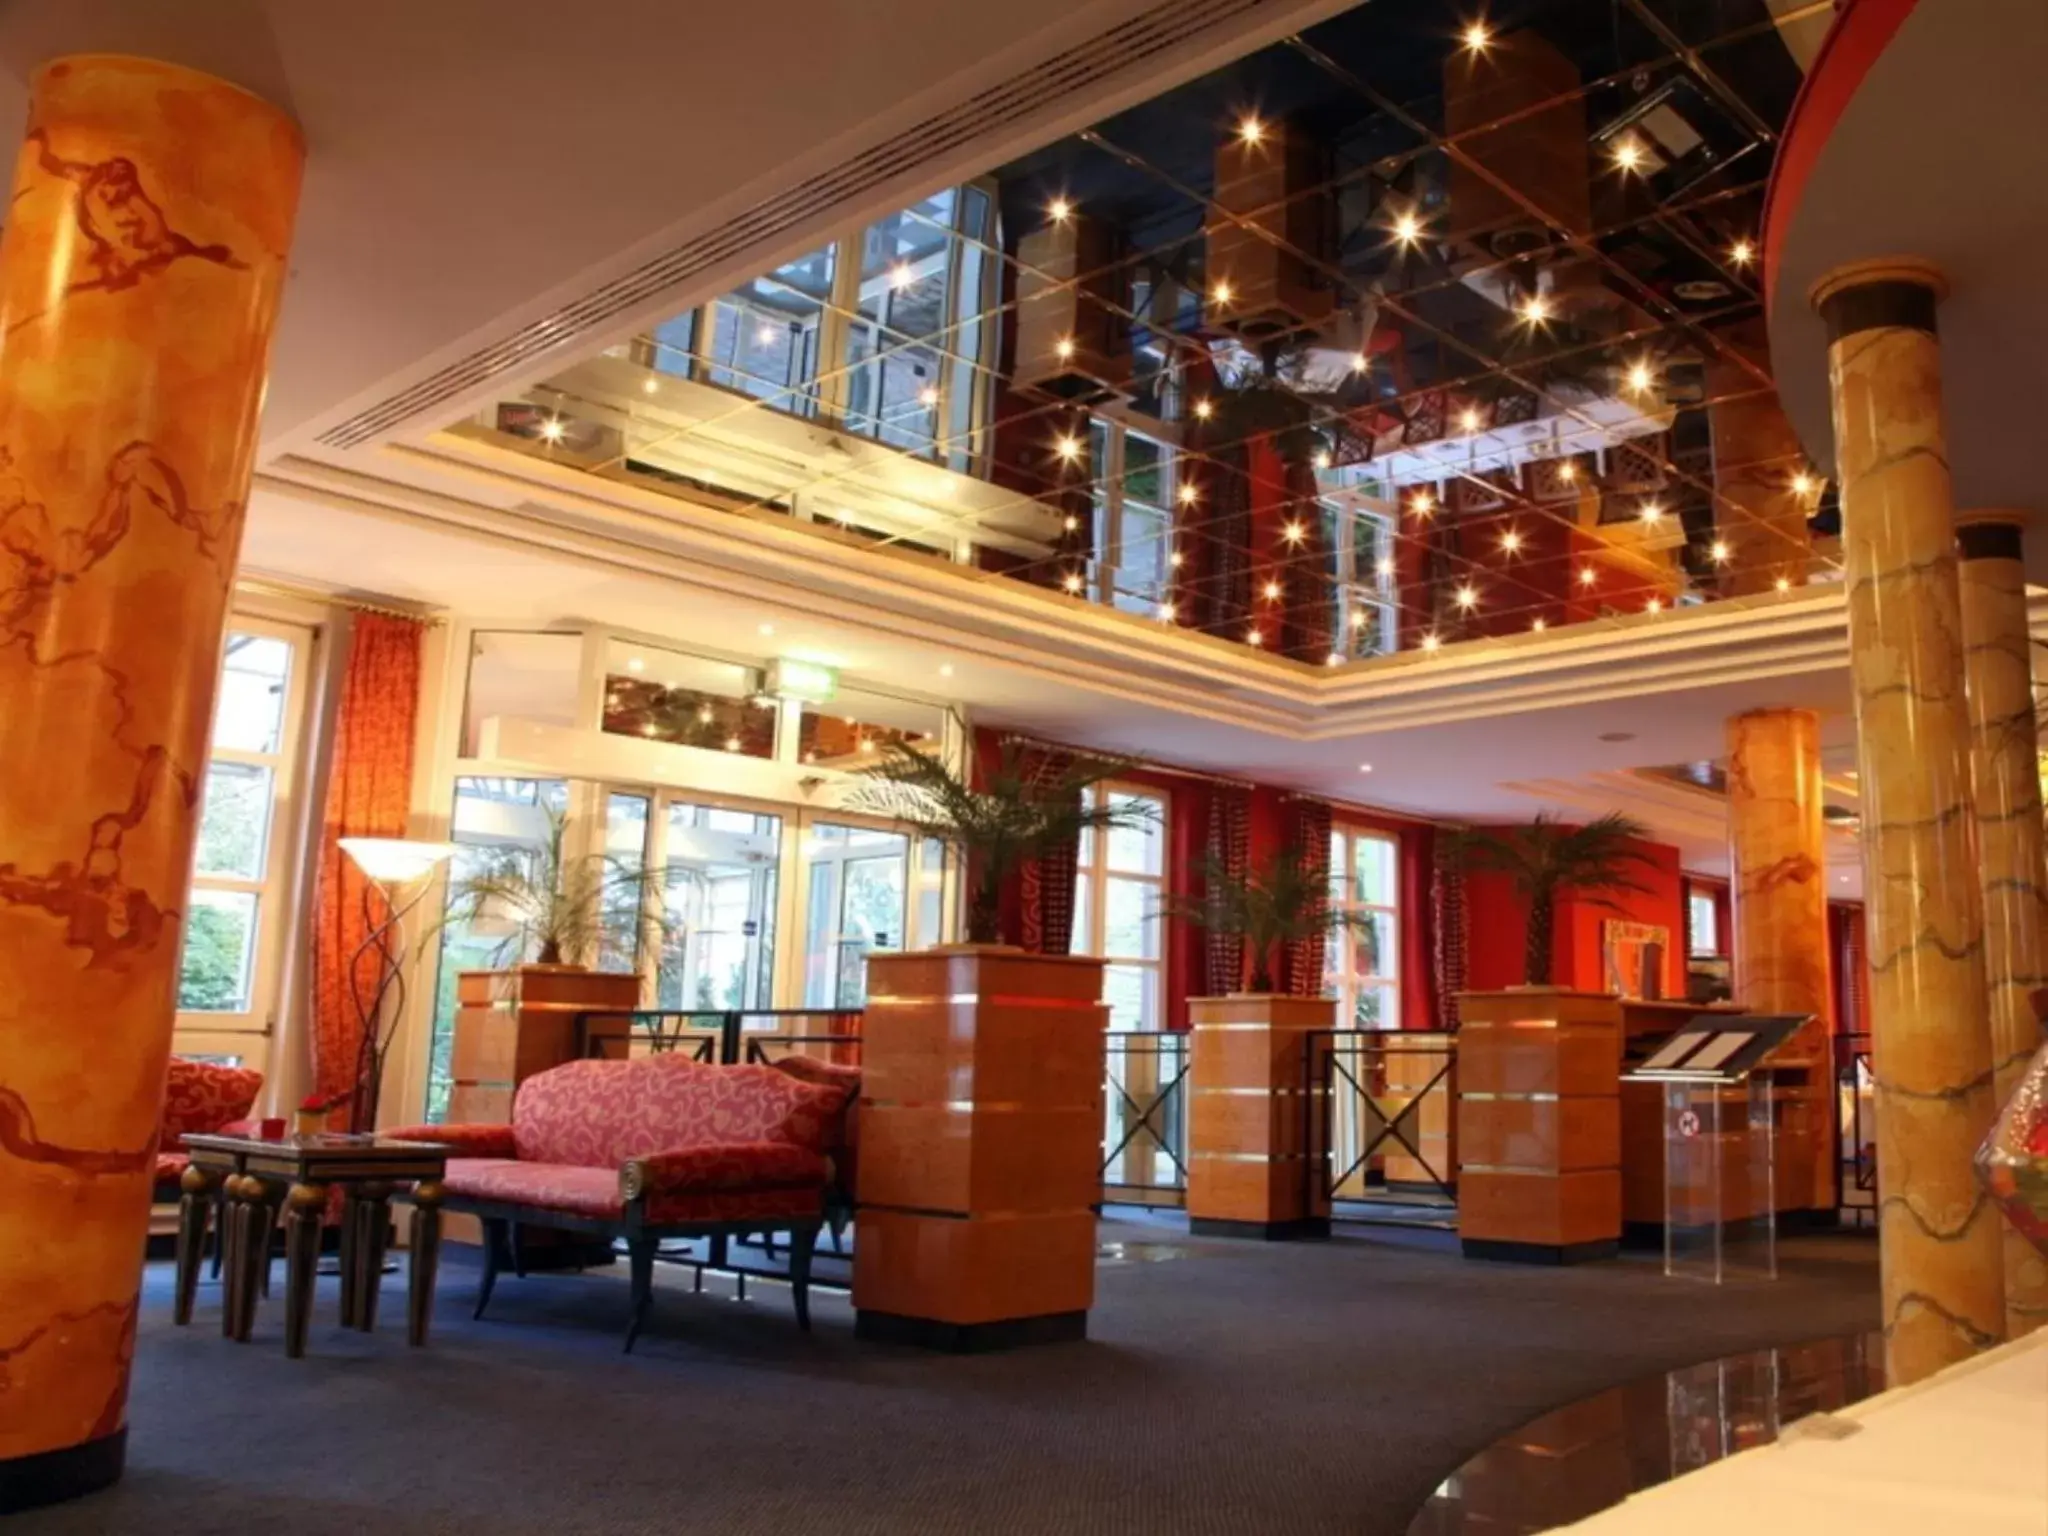 Lobby or reception, Lobby/Reception in Radisson Blu Hotel Halle-Merseburg